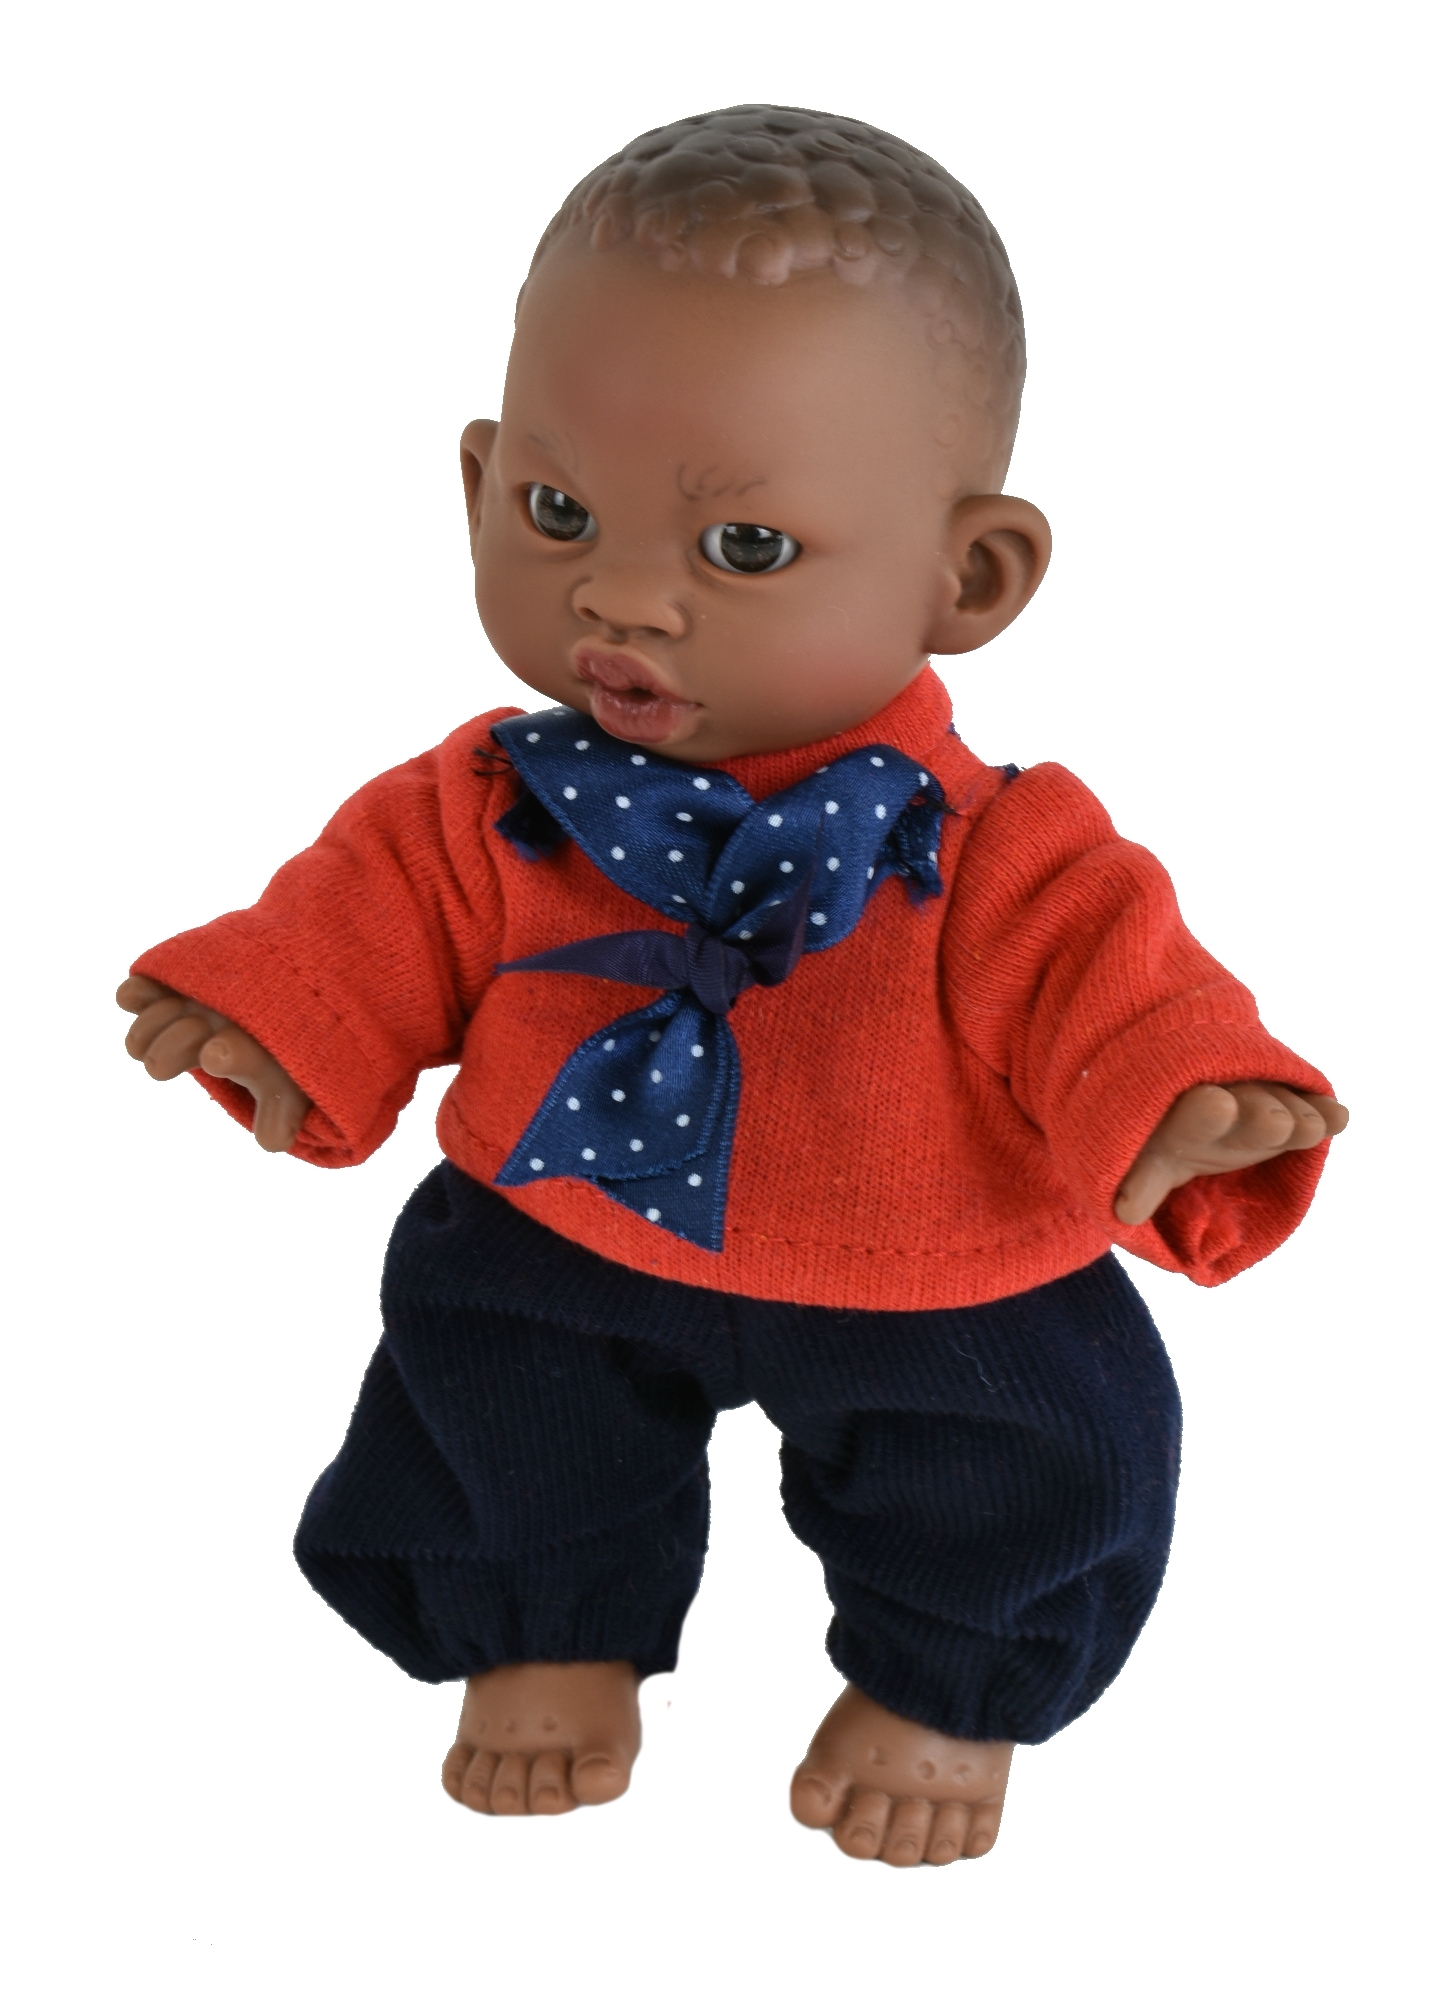 Кукла  Lamagik Джестито Инфант 18 см, в красной кофте с бантом, темнокожий 10000U lamagik s l кукла джестито инфант в светло розовом свитере 18 см